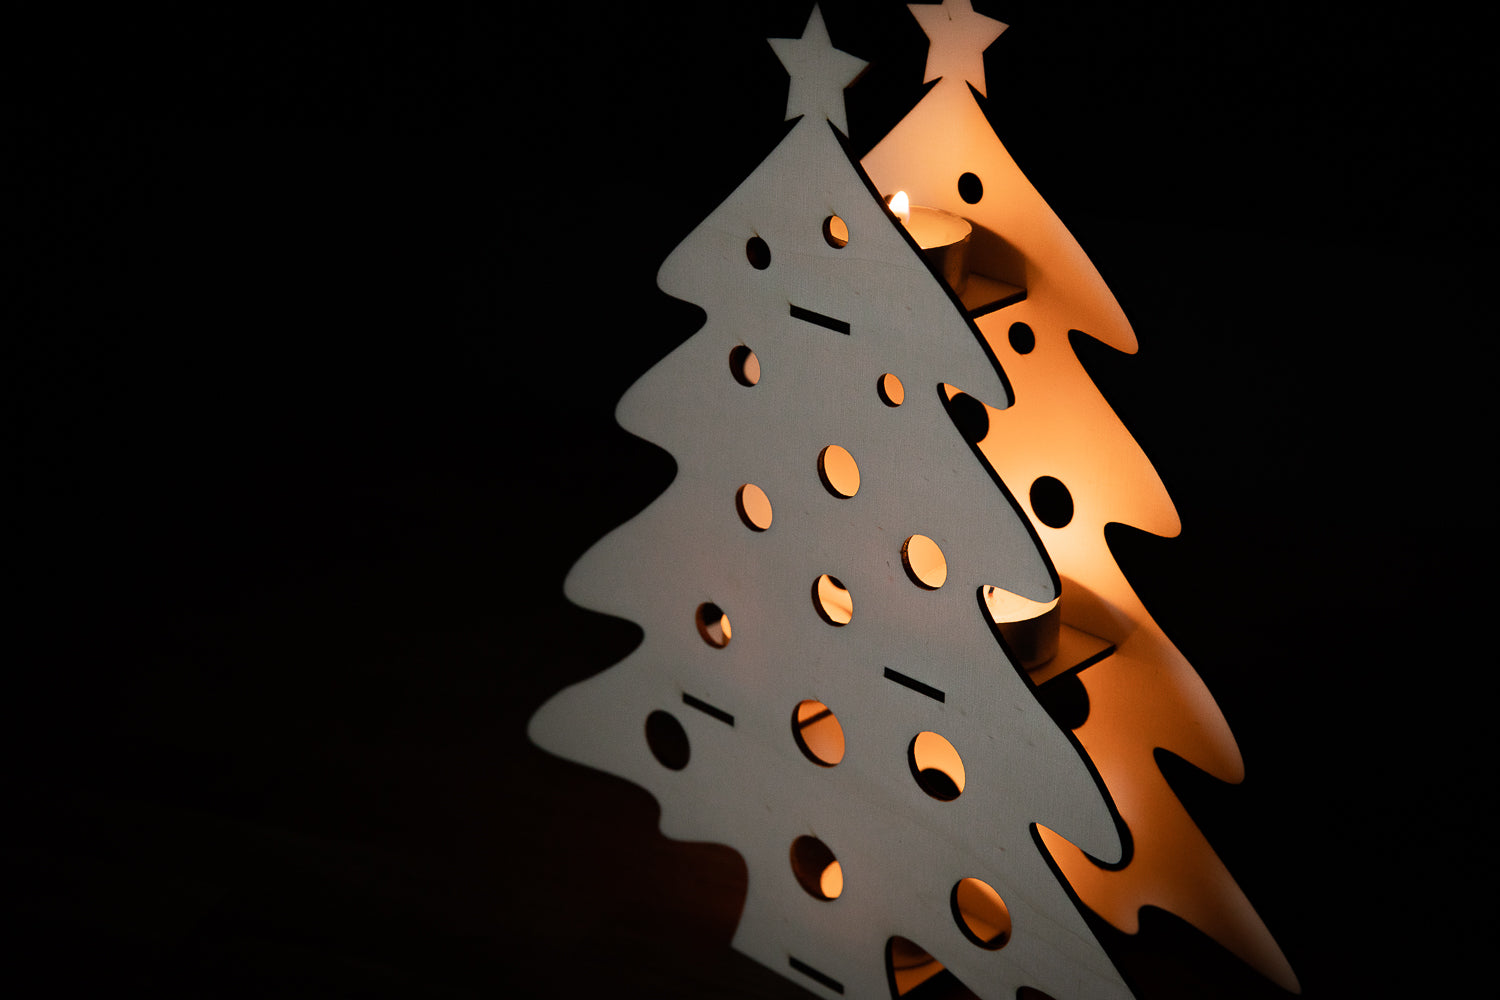 Nach Weihnachten: So verstauen Sie Tannenbaumschmuck und Deko richtig